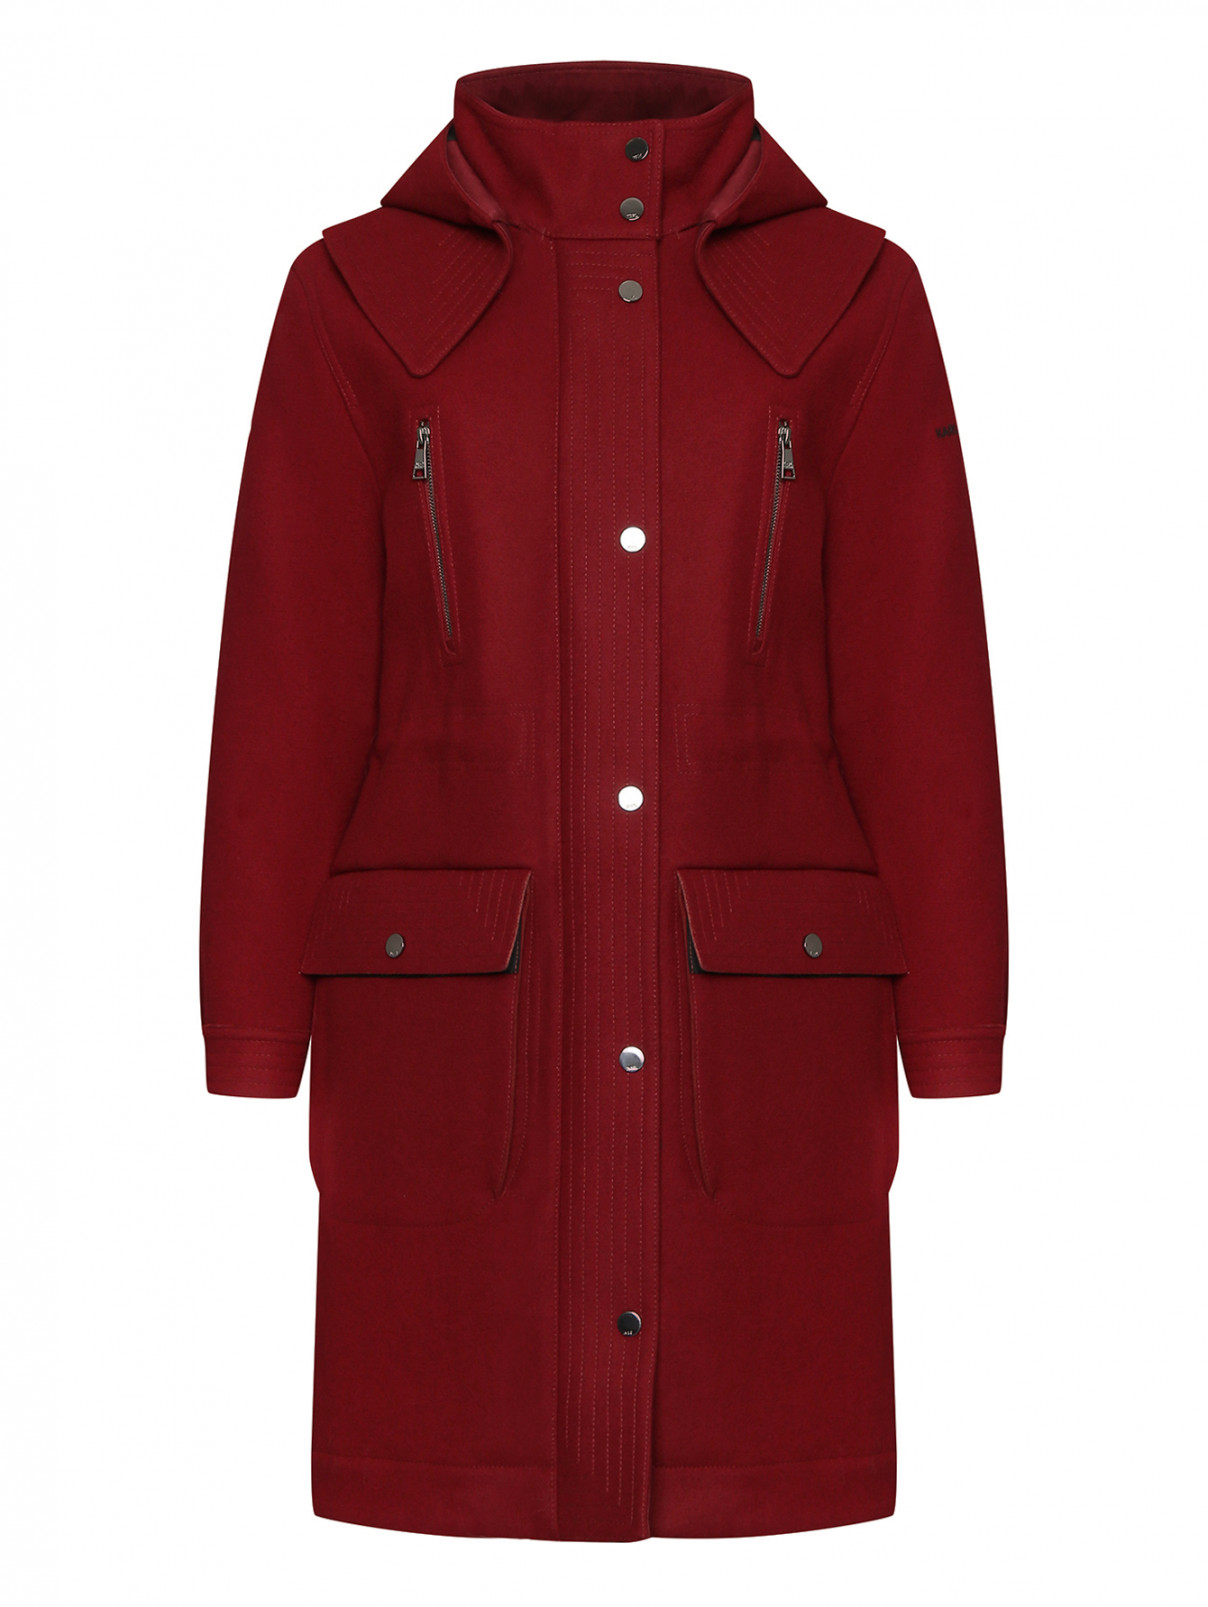 Пальто на молнии с накладными карманами и капюшоном Karl Lagerfeld  –  Общий вид  – Цвет:  Красный